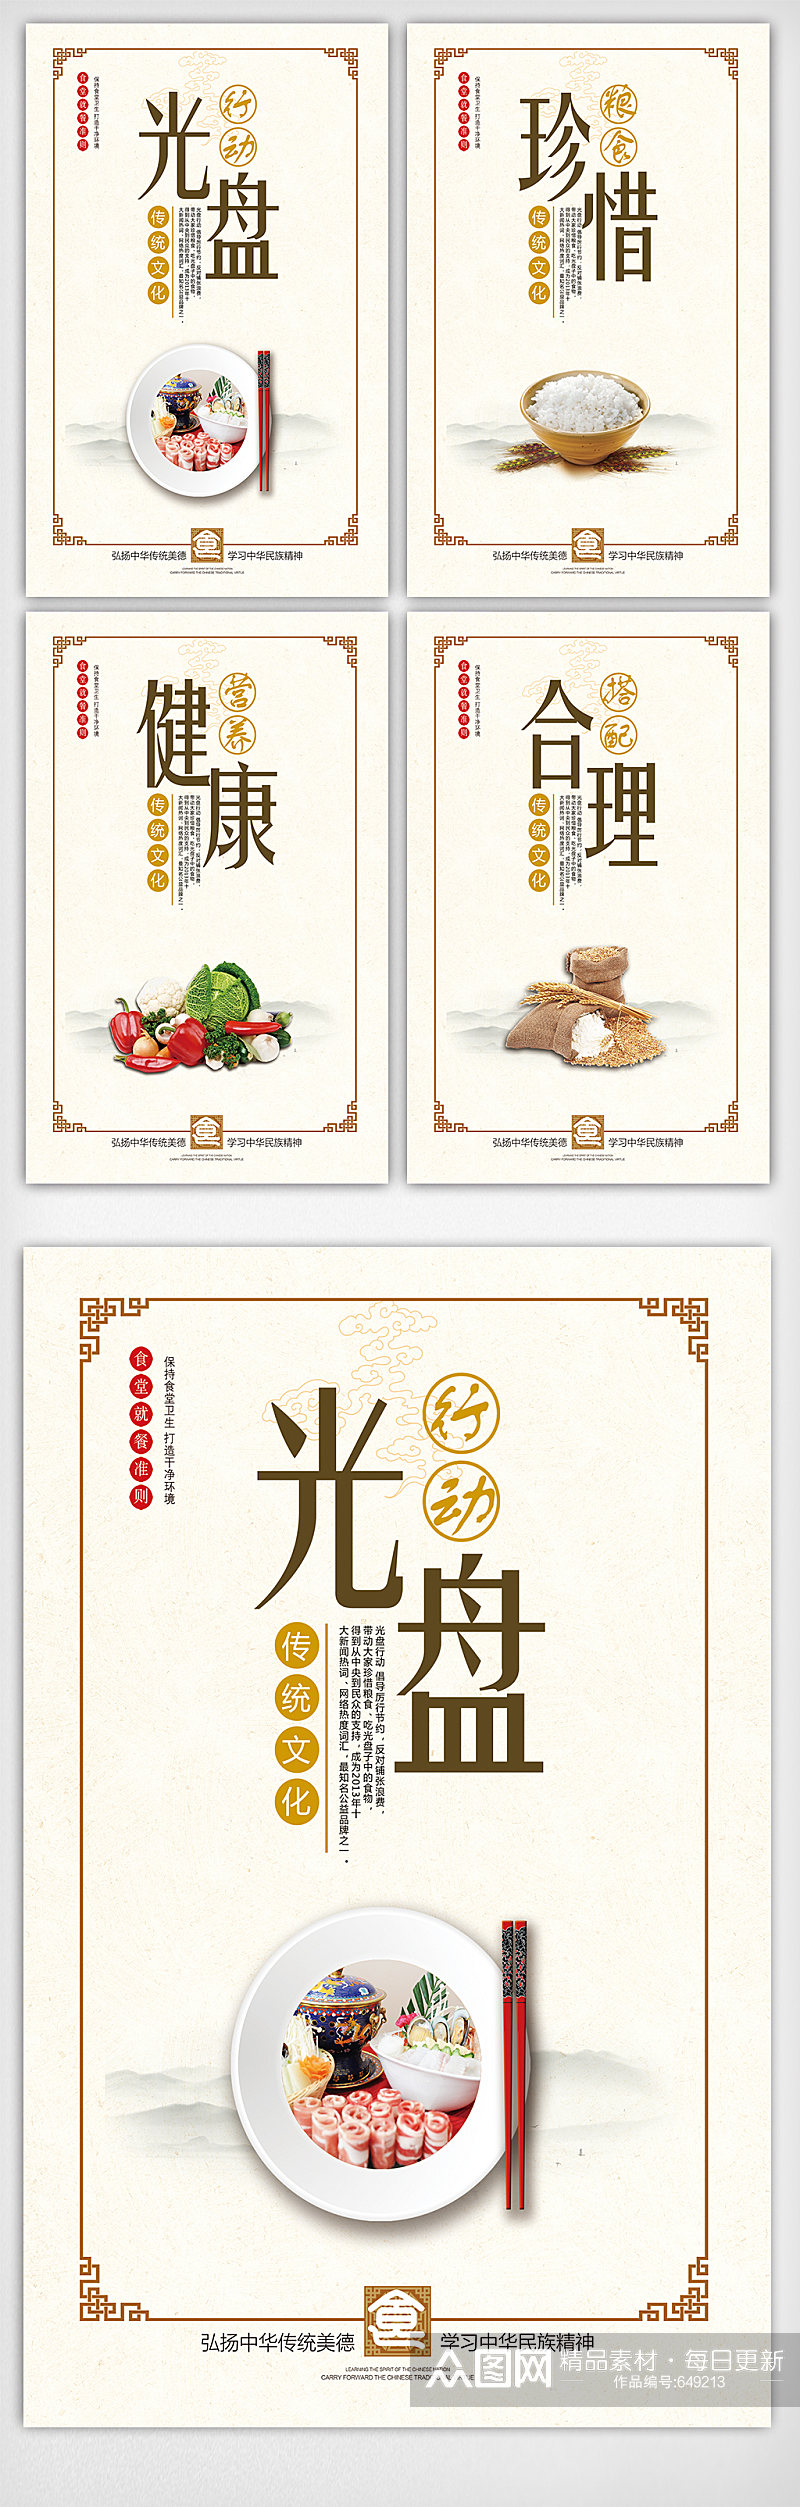 创意中国风清新食堂文化宣传挂画展板 珍惜粮食挂画海报素材